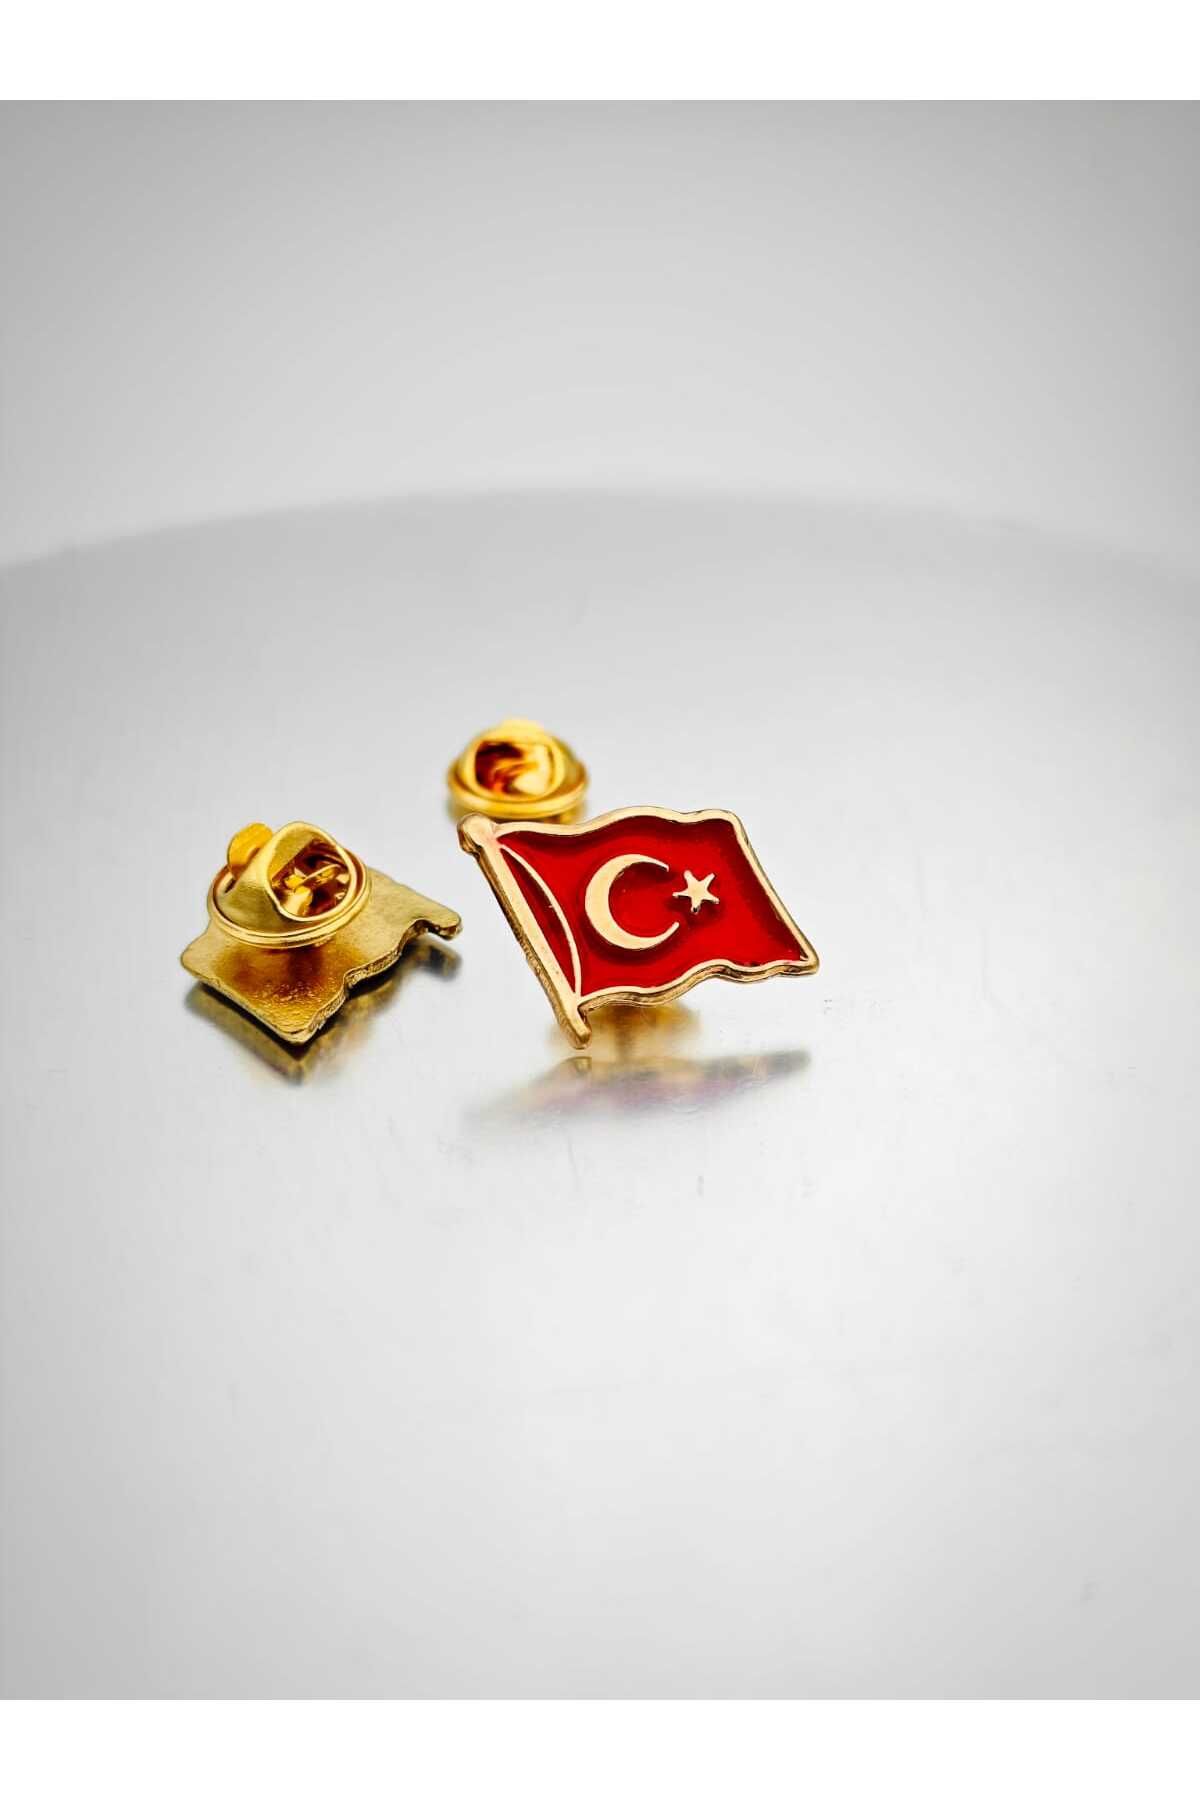 YÖRÜK TASARIM Türk Bayrağı Gold Yaka Rozeti